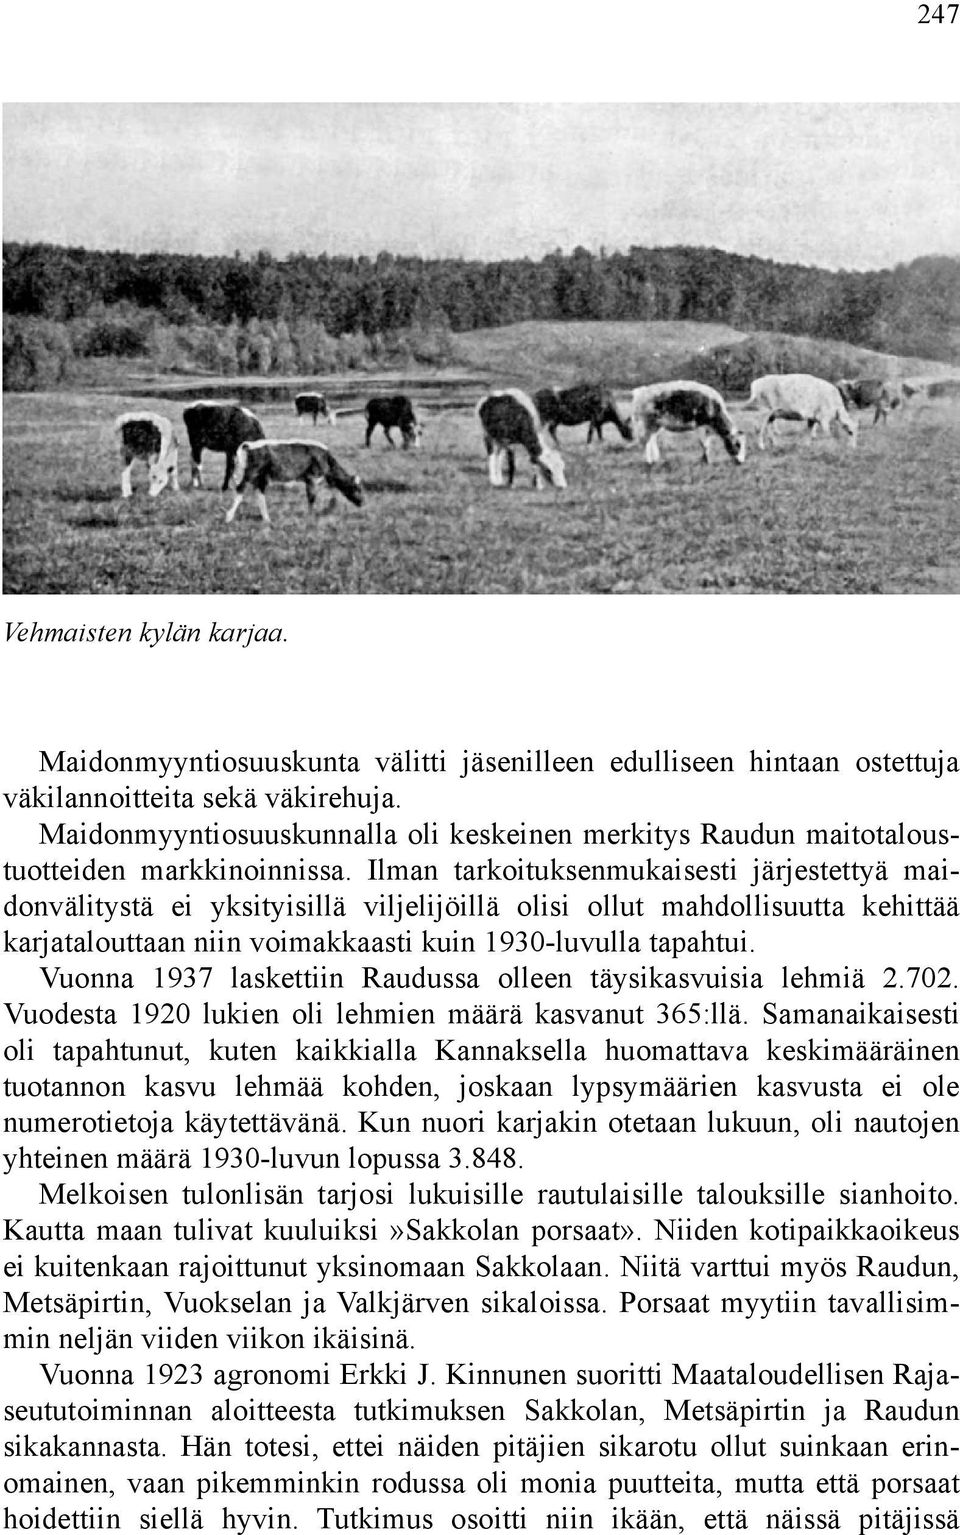 Ilman tarkoituksenmukaisesti järjestettyä maidonvälitystä ei yksityisillä viljelijöillä olisi ollut mahdollisuutta kehittää karjatalouttaan niin voimakkaasti kuin 1930-luvulla tapahtui.